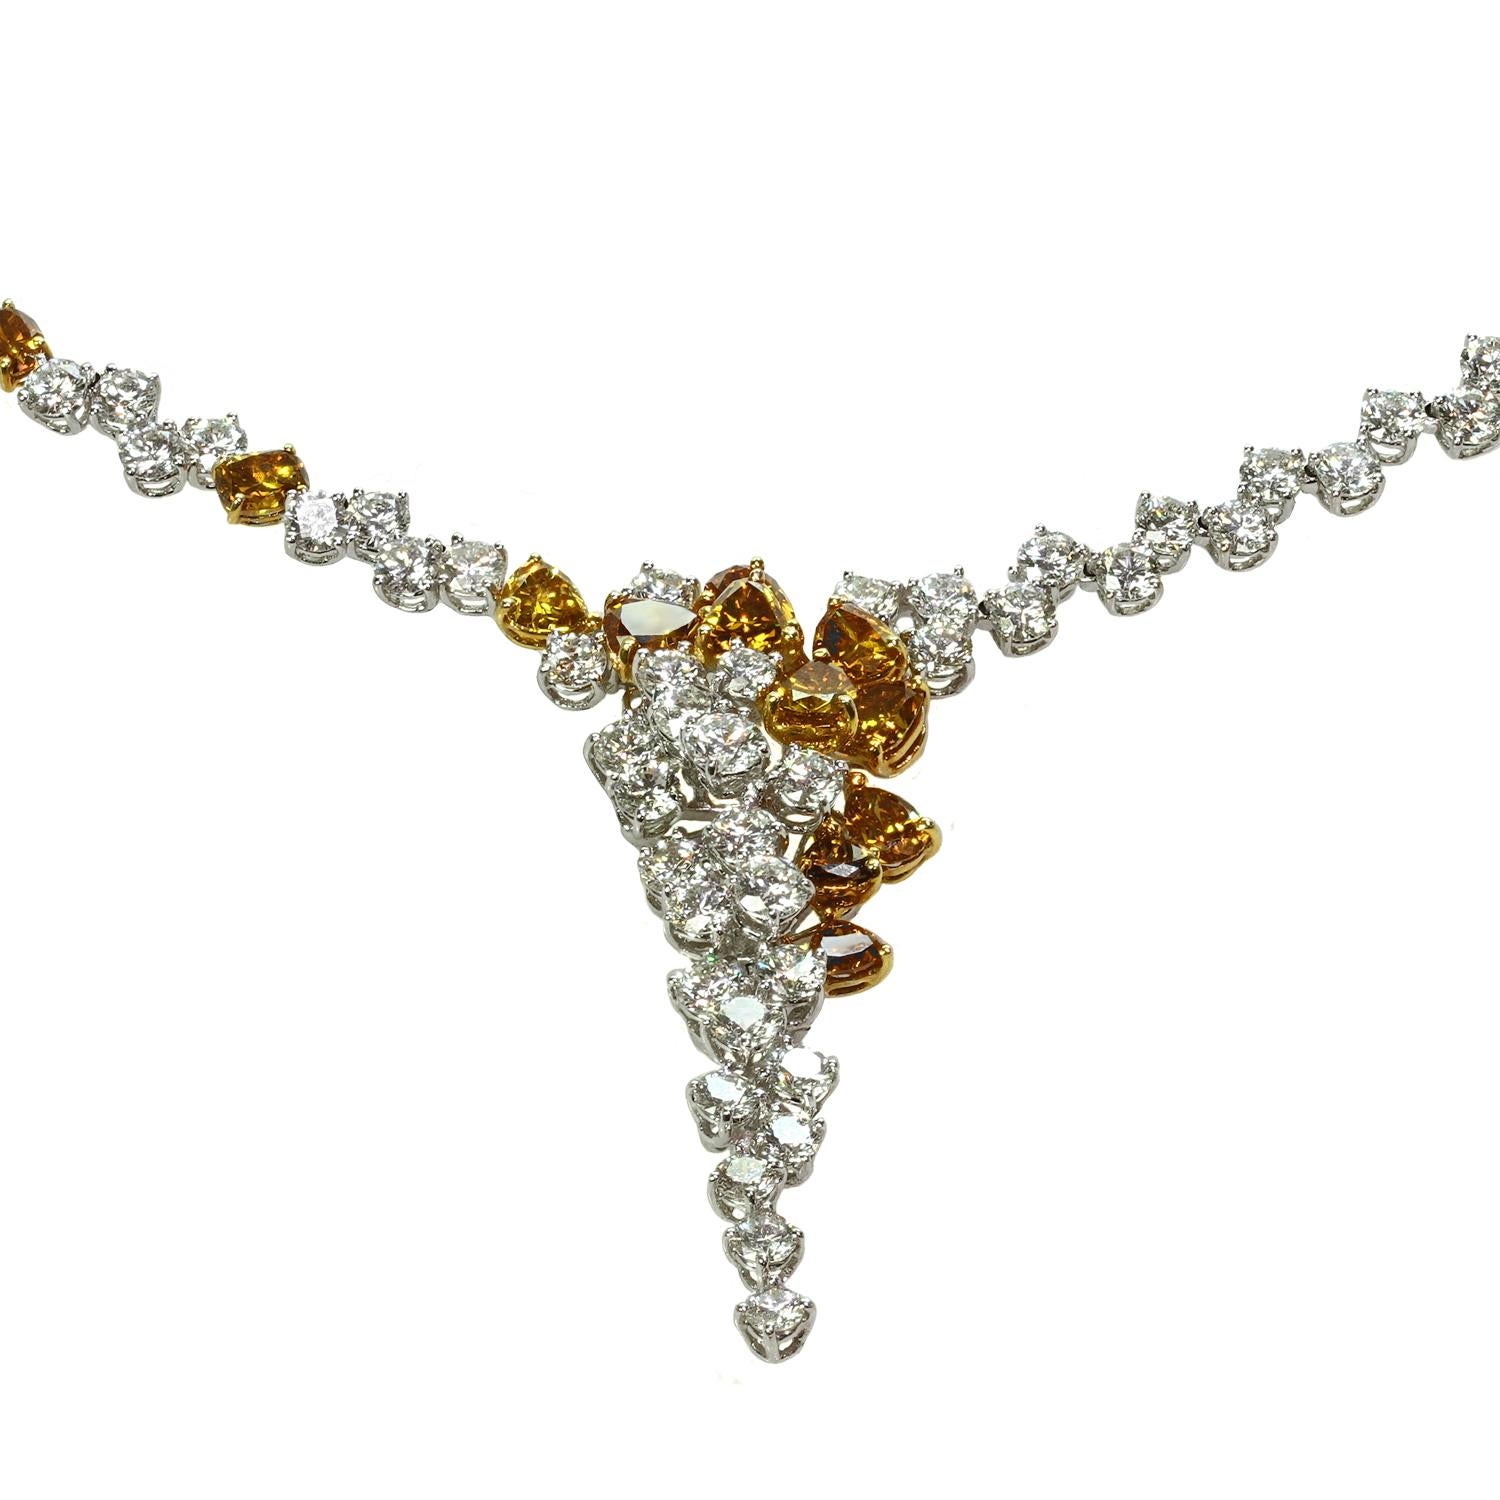 Ce somptueux collier en cascade est réalisé de manière exquise en or blanc 18 carats et comporte 22 diamants orange de fantaisie intensément vifs d'un poids total de 7,6 carats et 154 diamants blancs d'un poids total de 24,72 carats. Mesures : 43,1